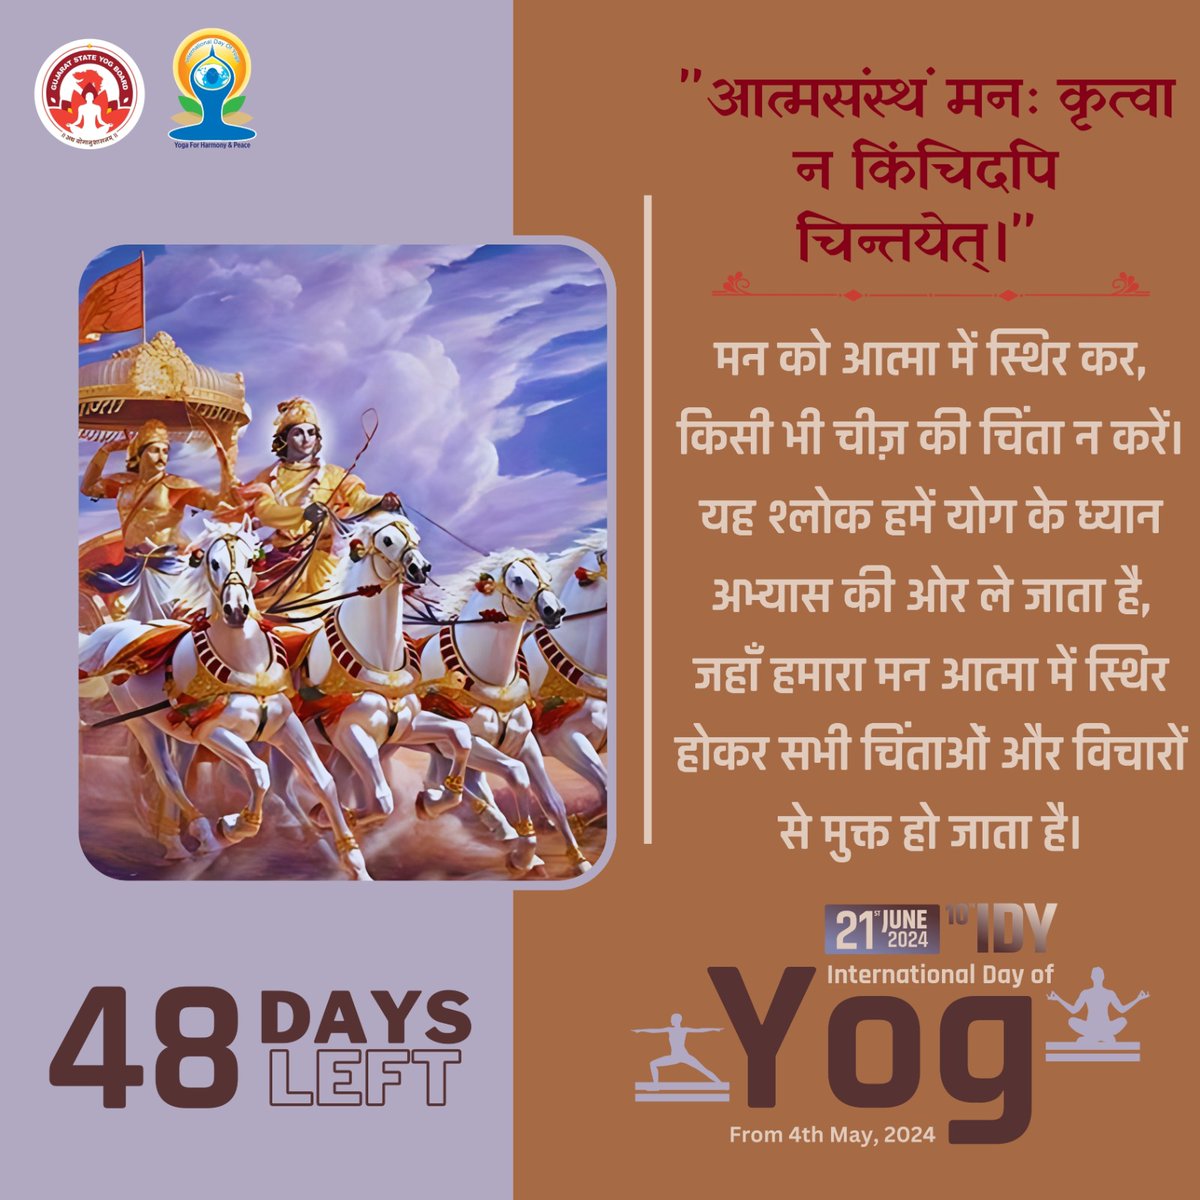 'आत्मसंस्थं मनः कृत्वा न किंचिदपि चिन्तयेत्।' 

मन को आत्मा में स्थिर कर, किसी भी चीज़ की चिंता न करें। यह श्लोक हमें योग के ध्यान अभ्यास की ओर ले जाता है, 

48 Days left to International Day of Yoga 2024

#GujaratStateYogBoard #YogmayGujarat #yogkaamrutkal #IDY2024